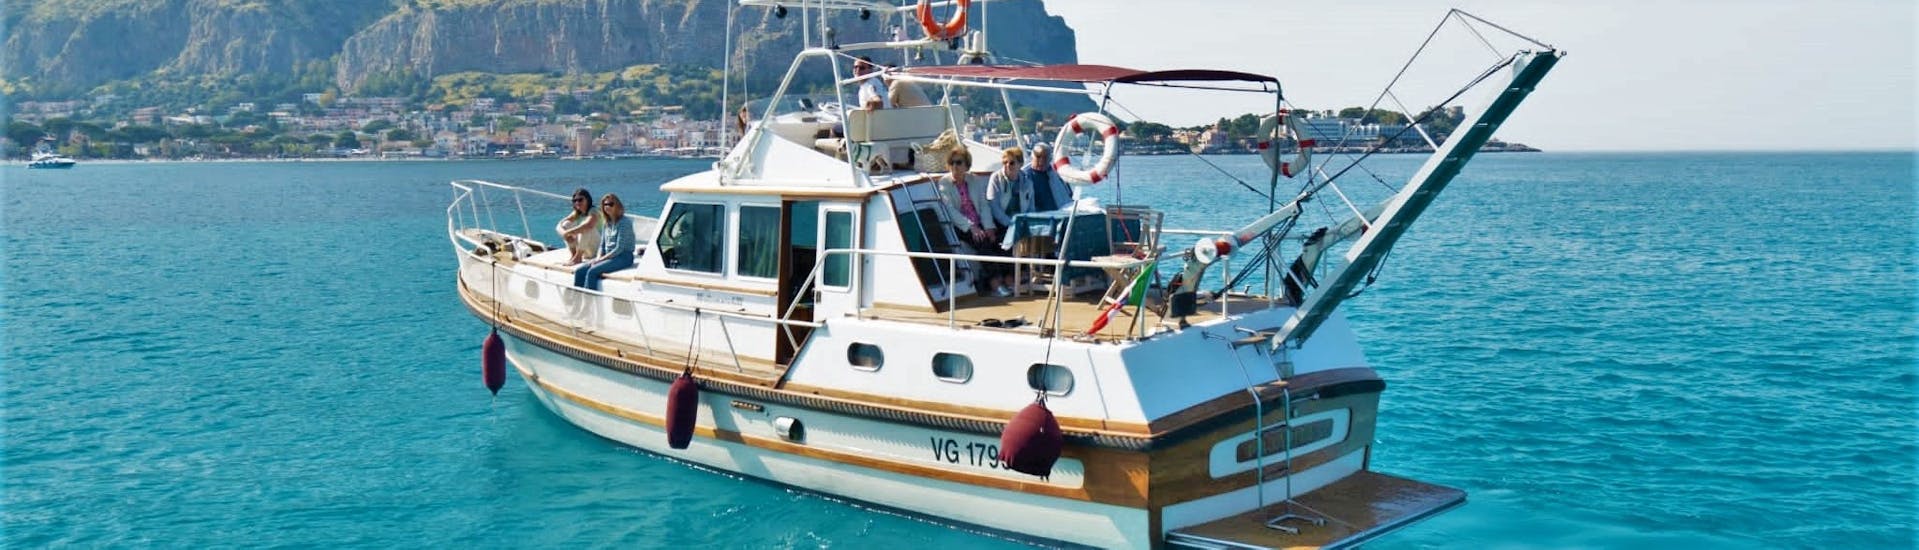 Le bateau utilisé par Seica Boat lors de l'excursion en bateau de Palerme à la plage de Mondello avec l'apéritif.